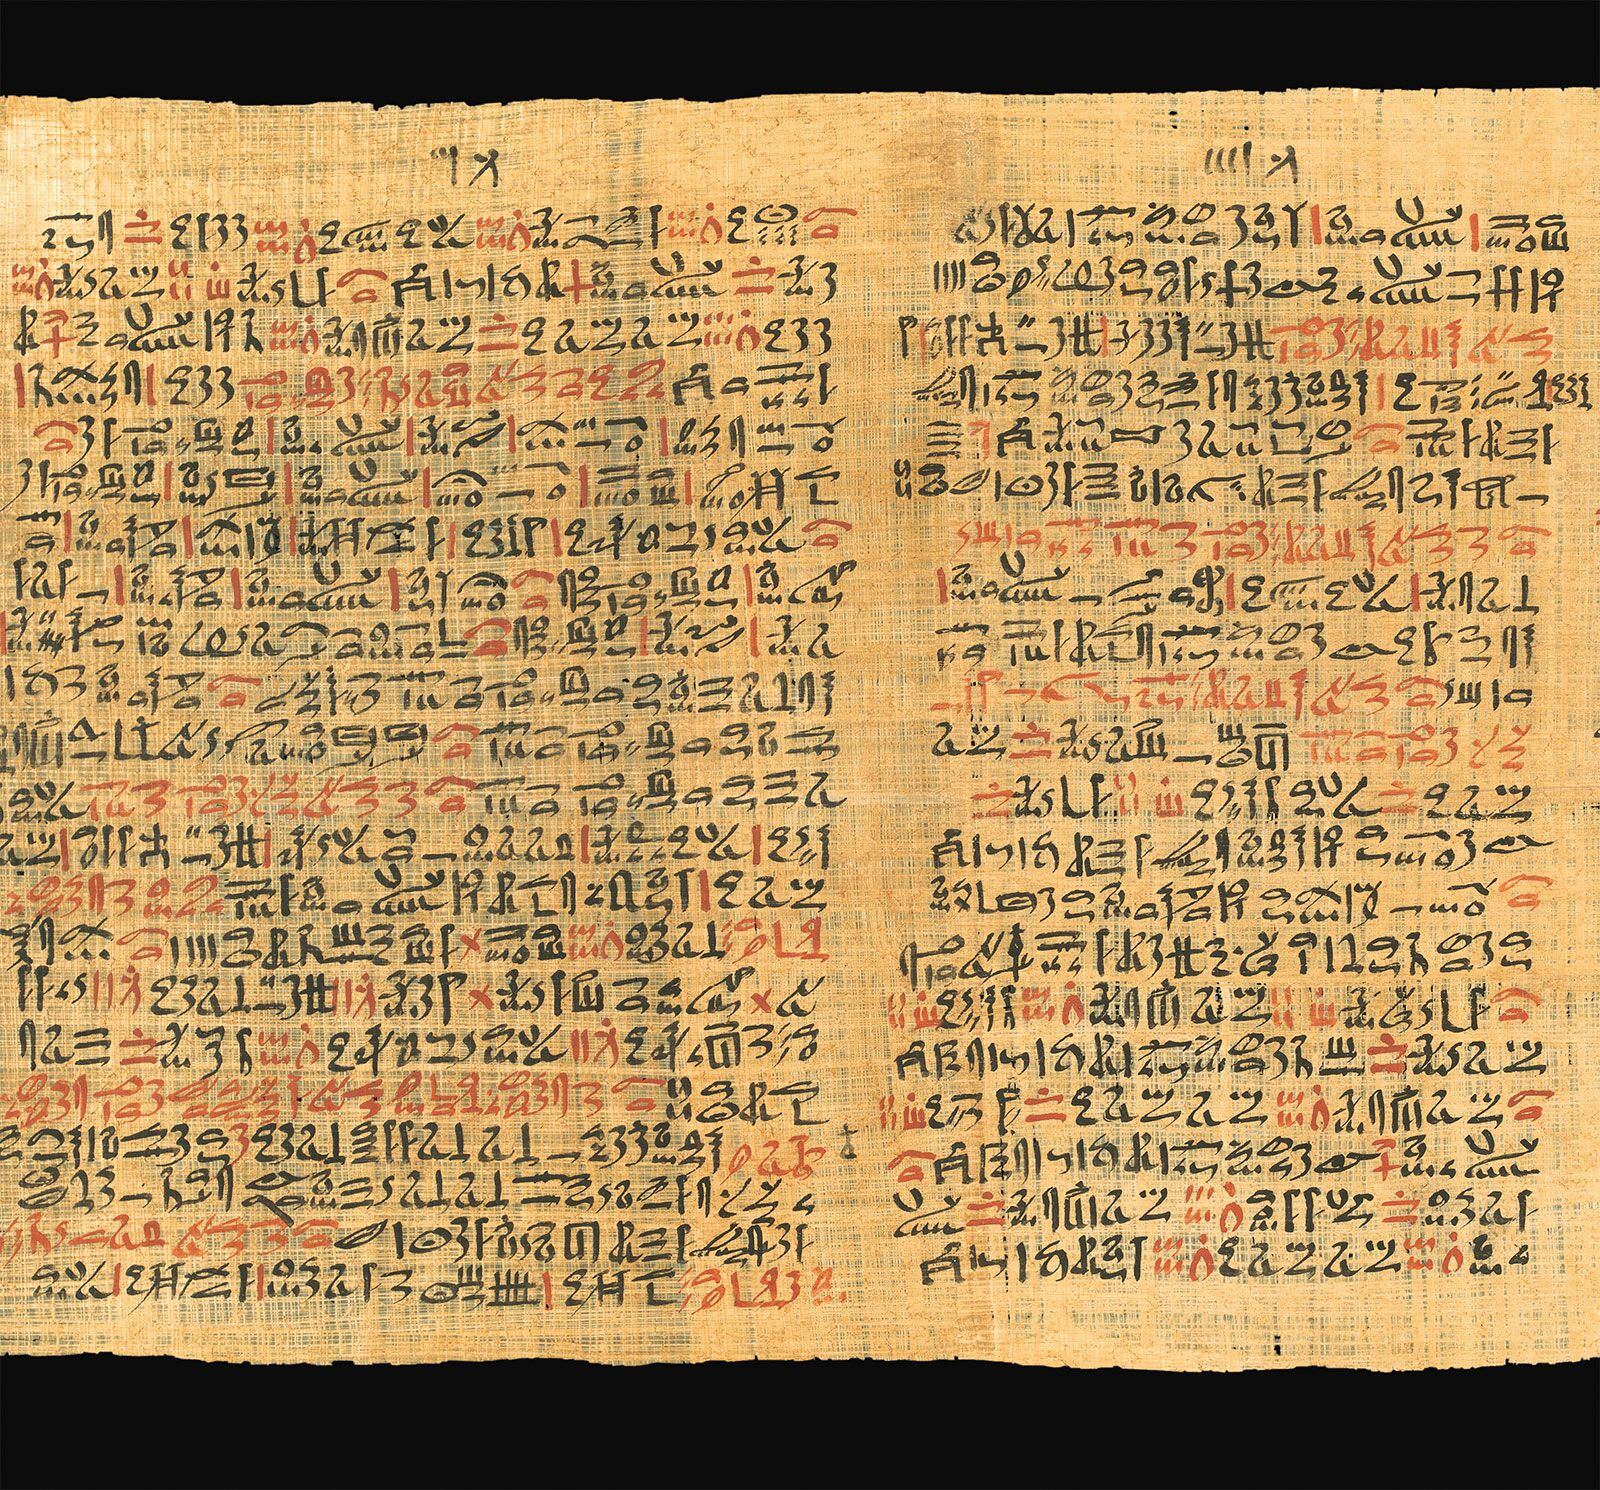 Fragmento do Papiro Ebers, guardado na Universidade de Leipzig (Alemanha).